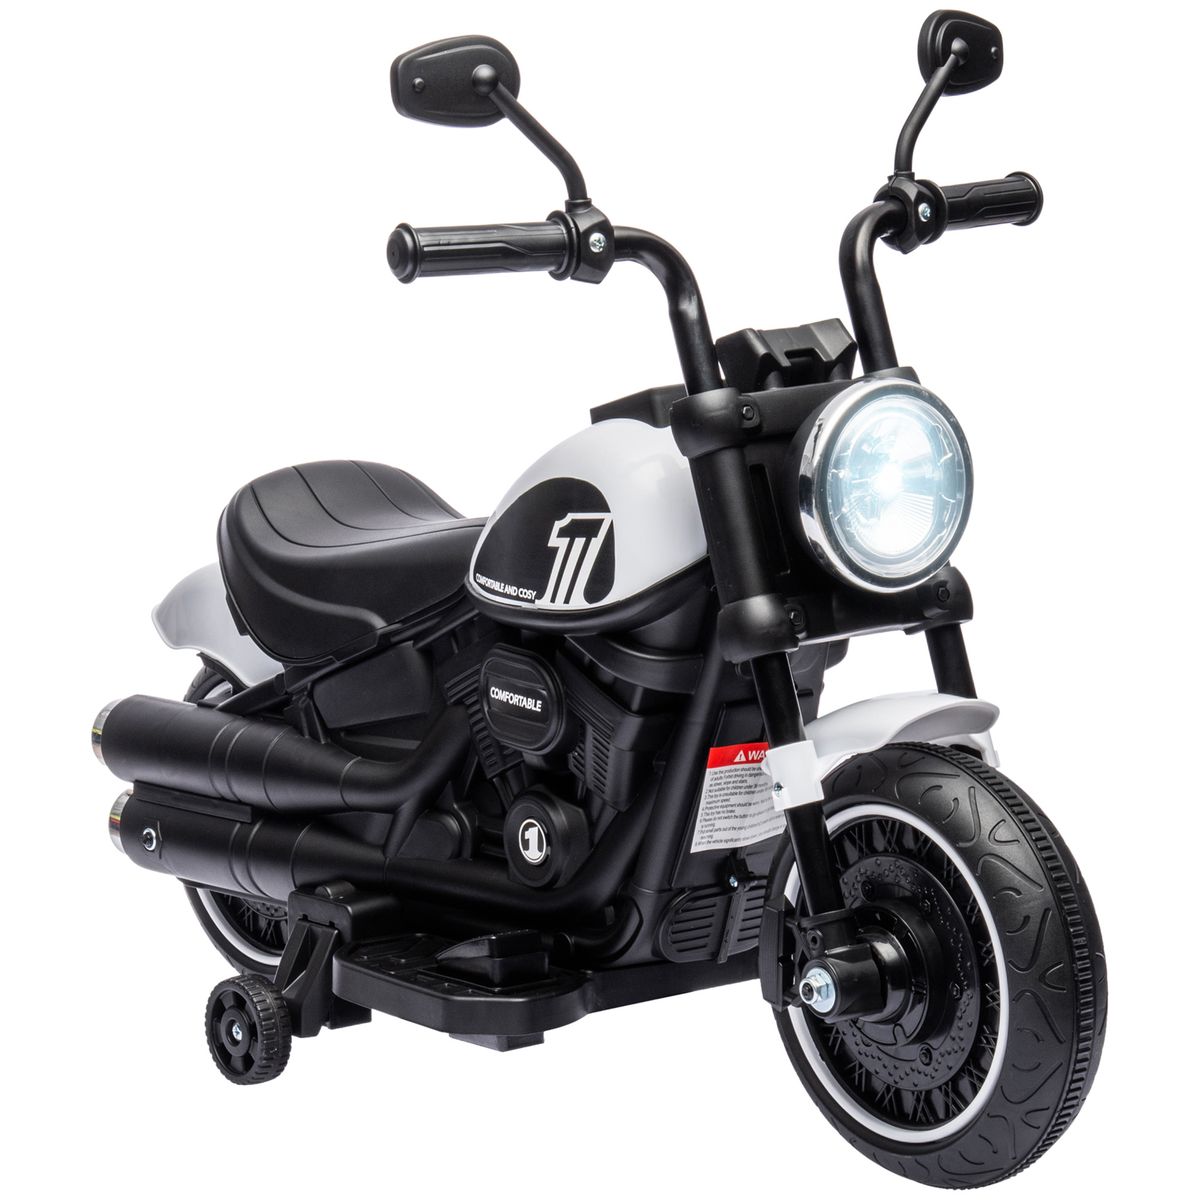 HOMCOM moto pour enfant Moto Cross Electrique avec roulettes Amovibles pour  Enfant de 3 à 8 Ans 35 W Vert 